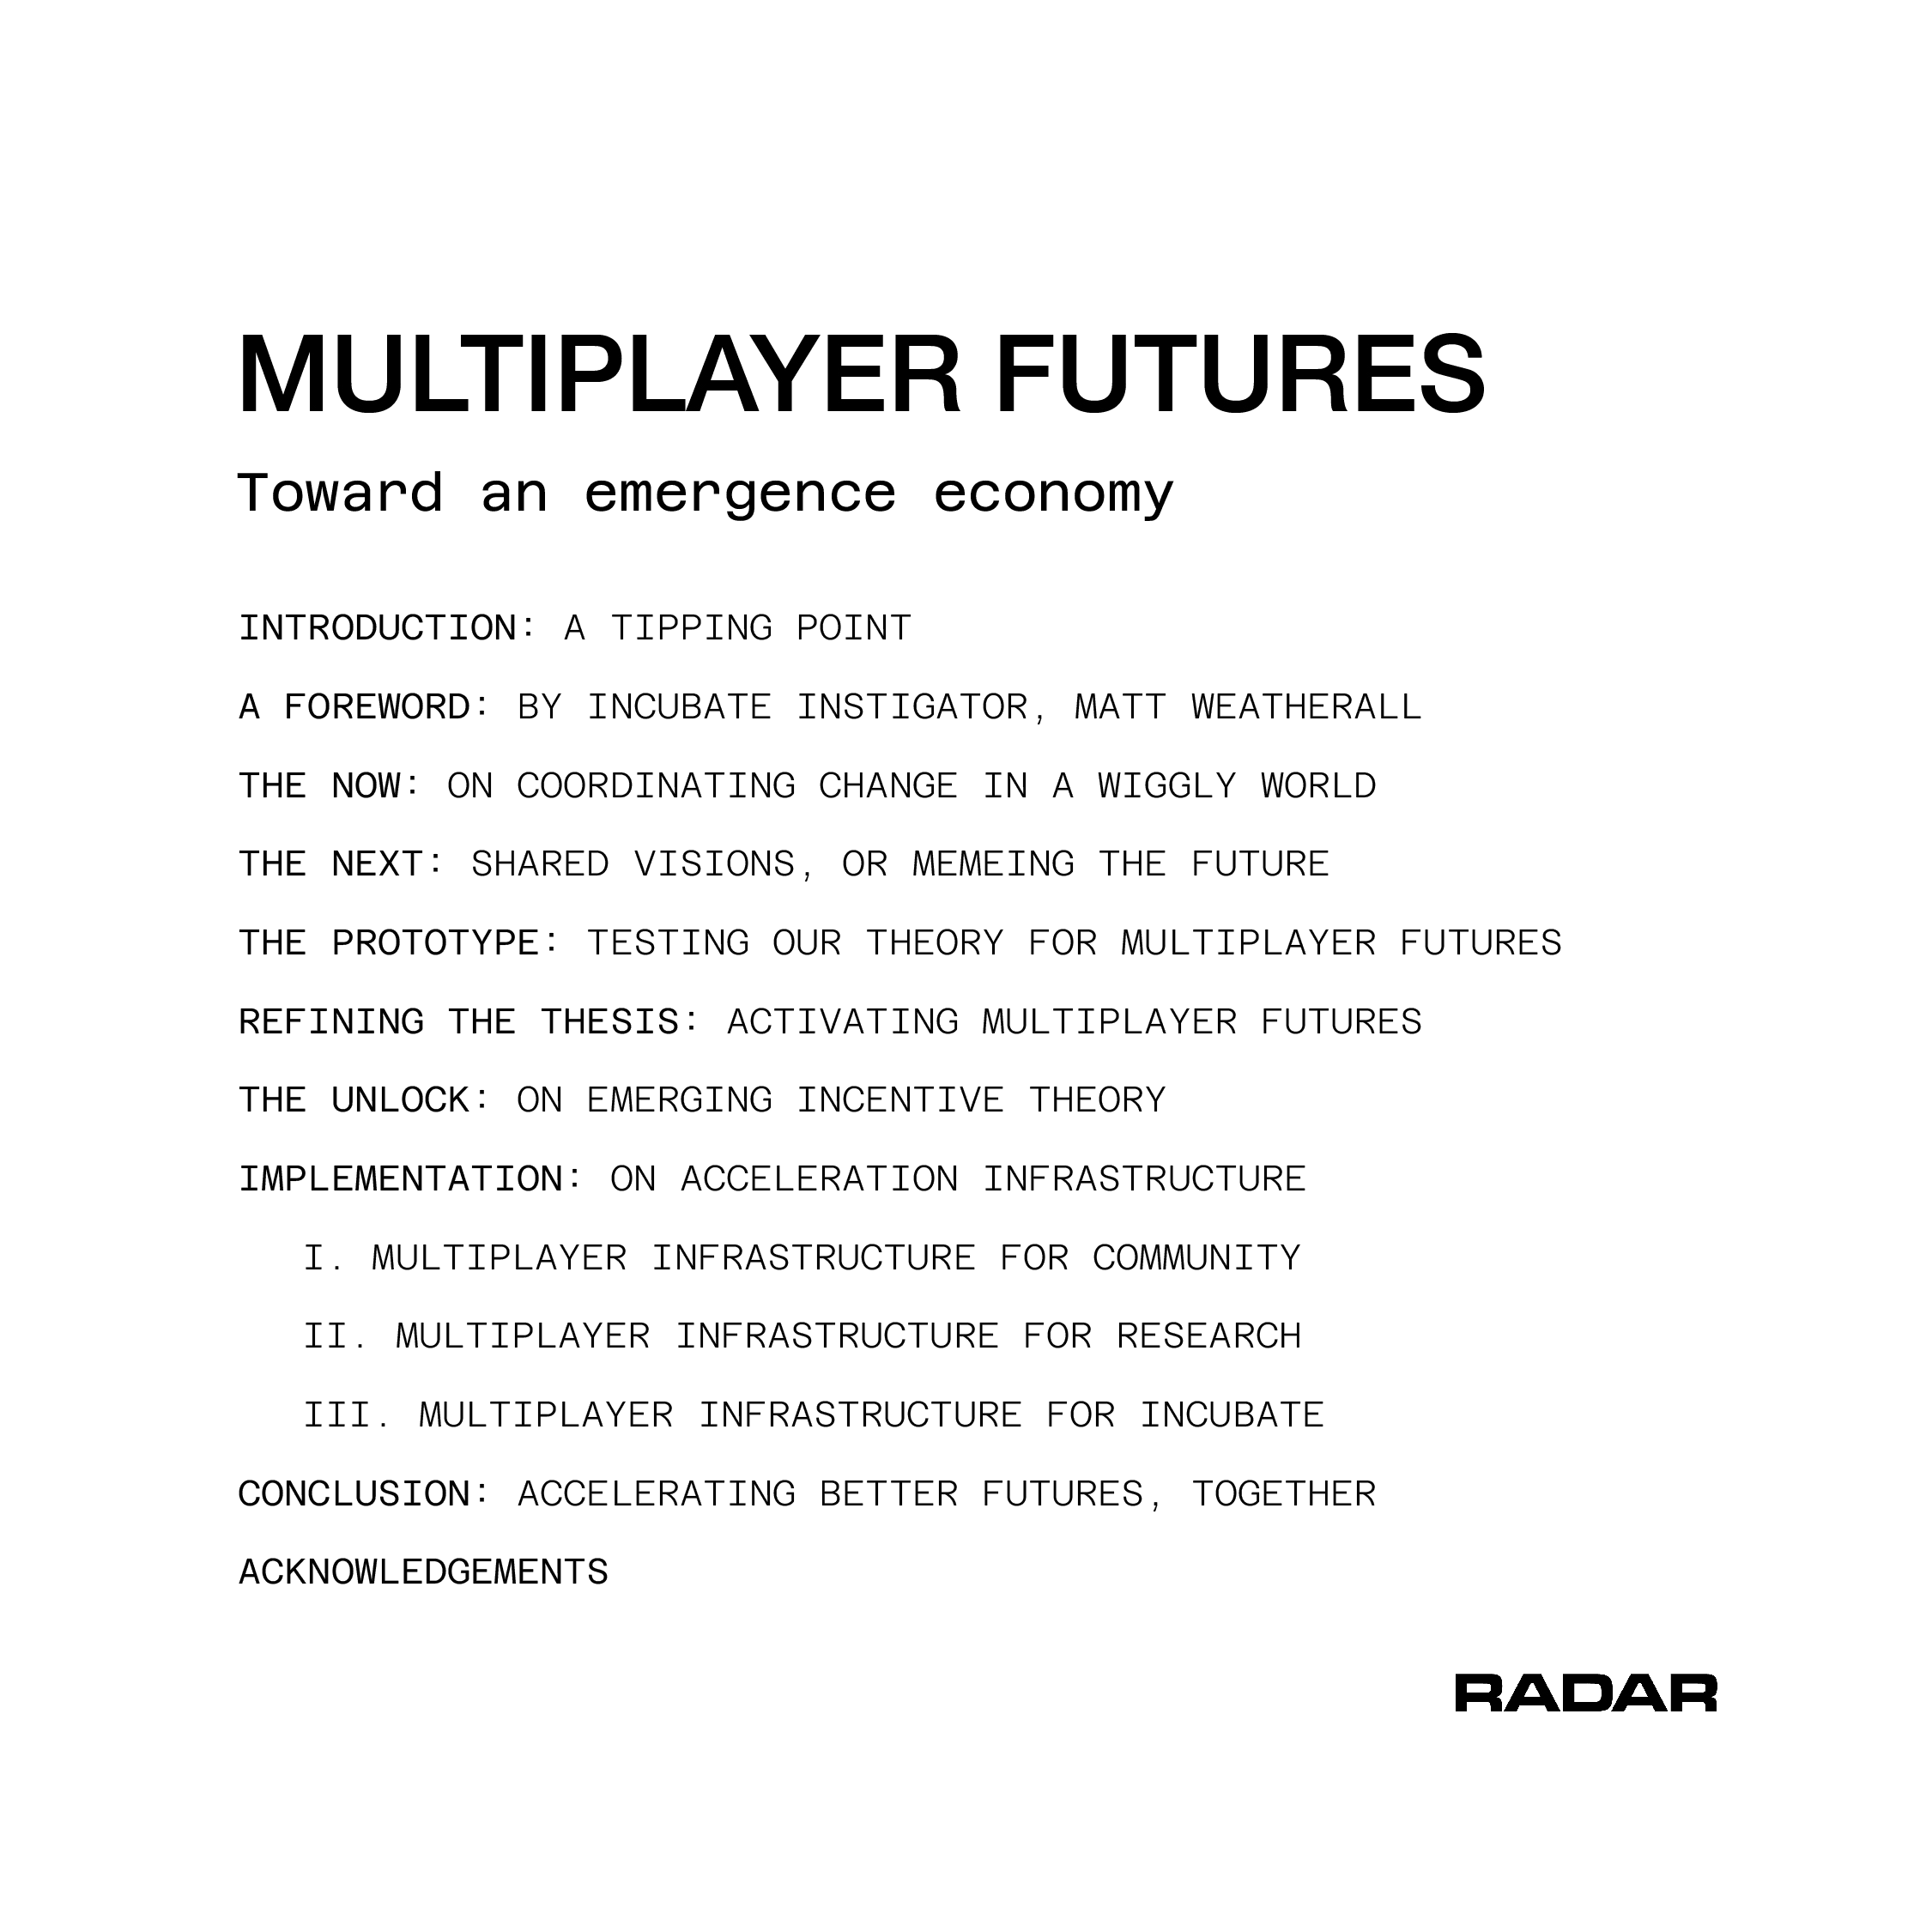 MULTIPLAYER FUTURES 38